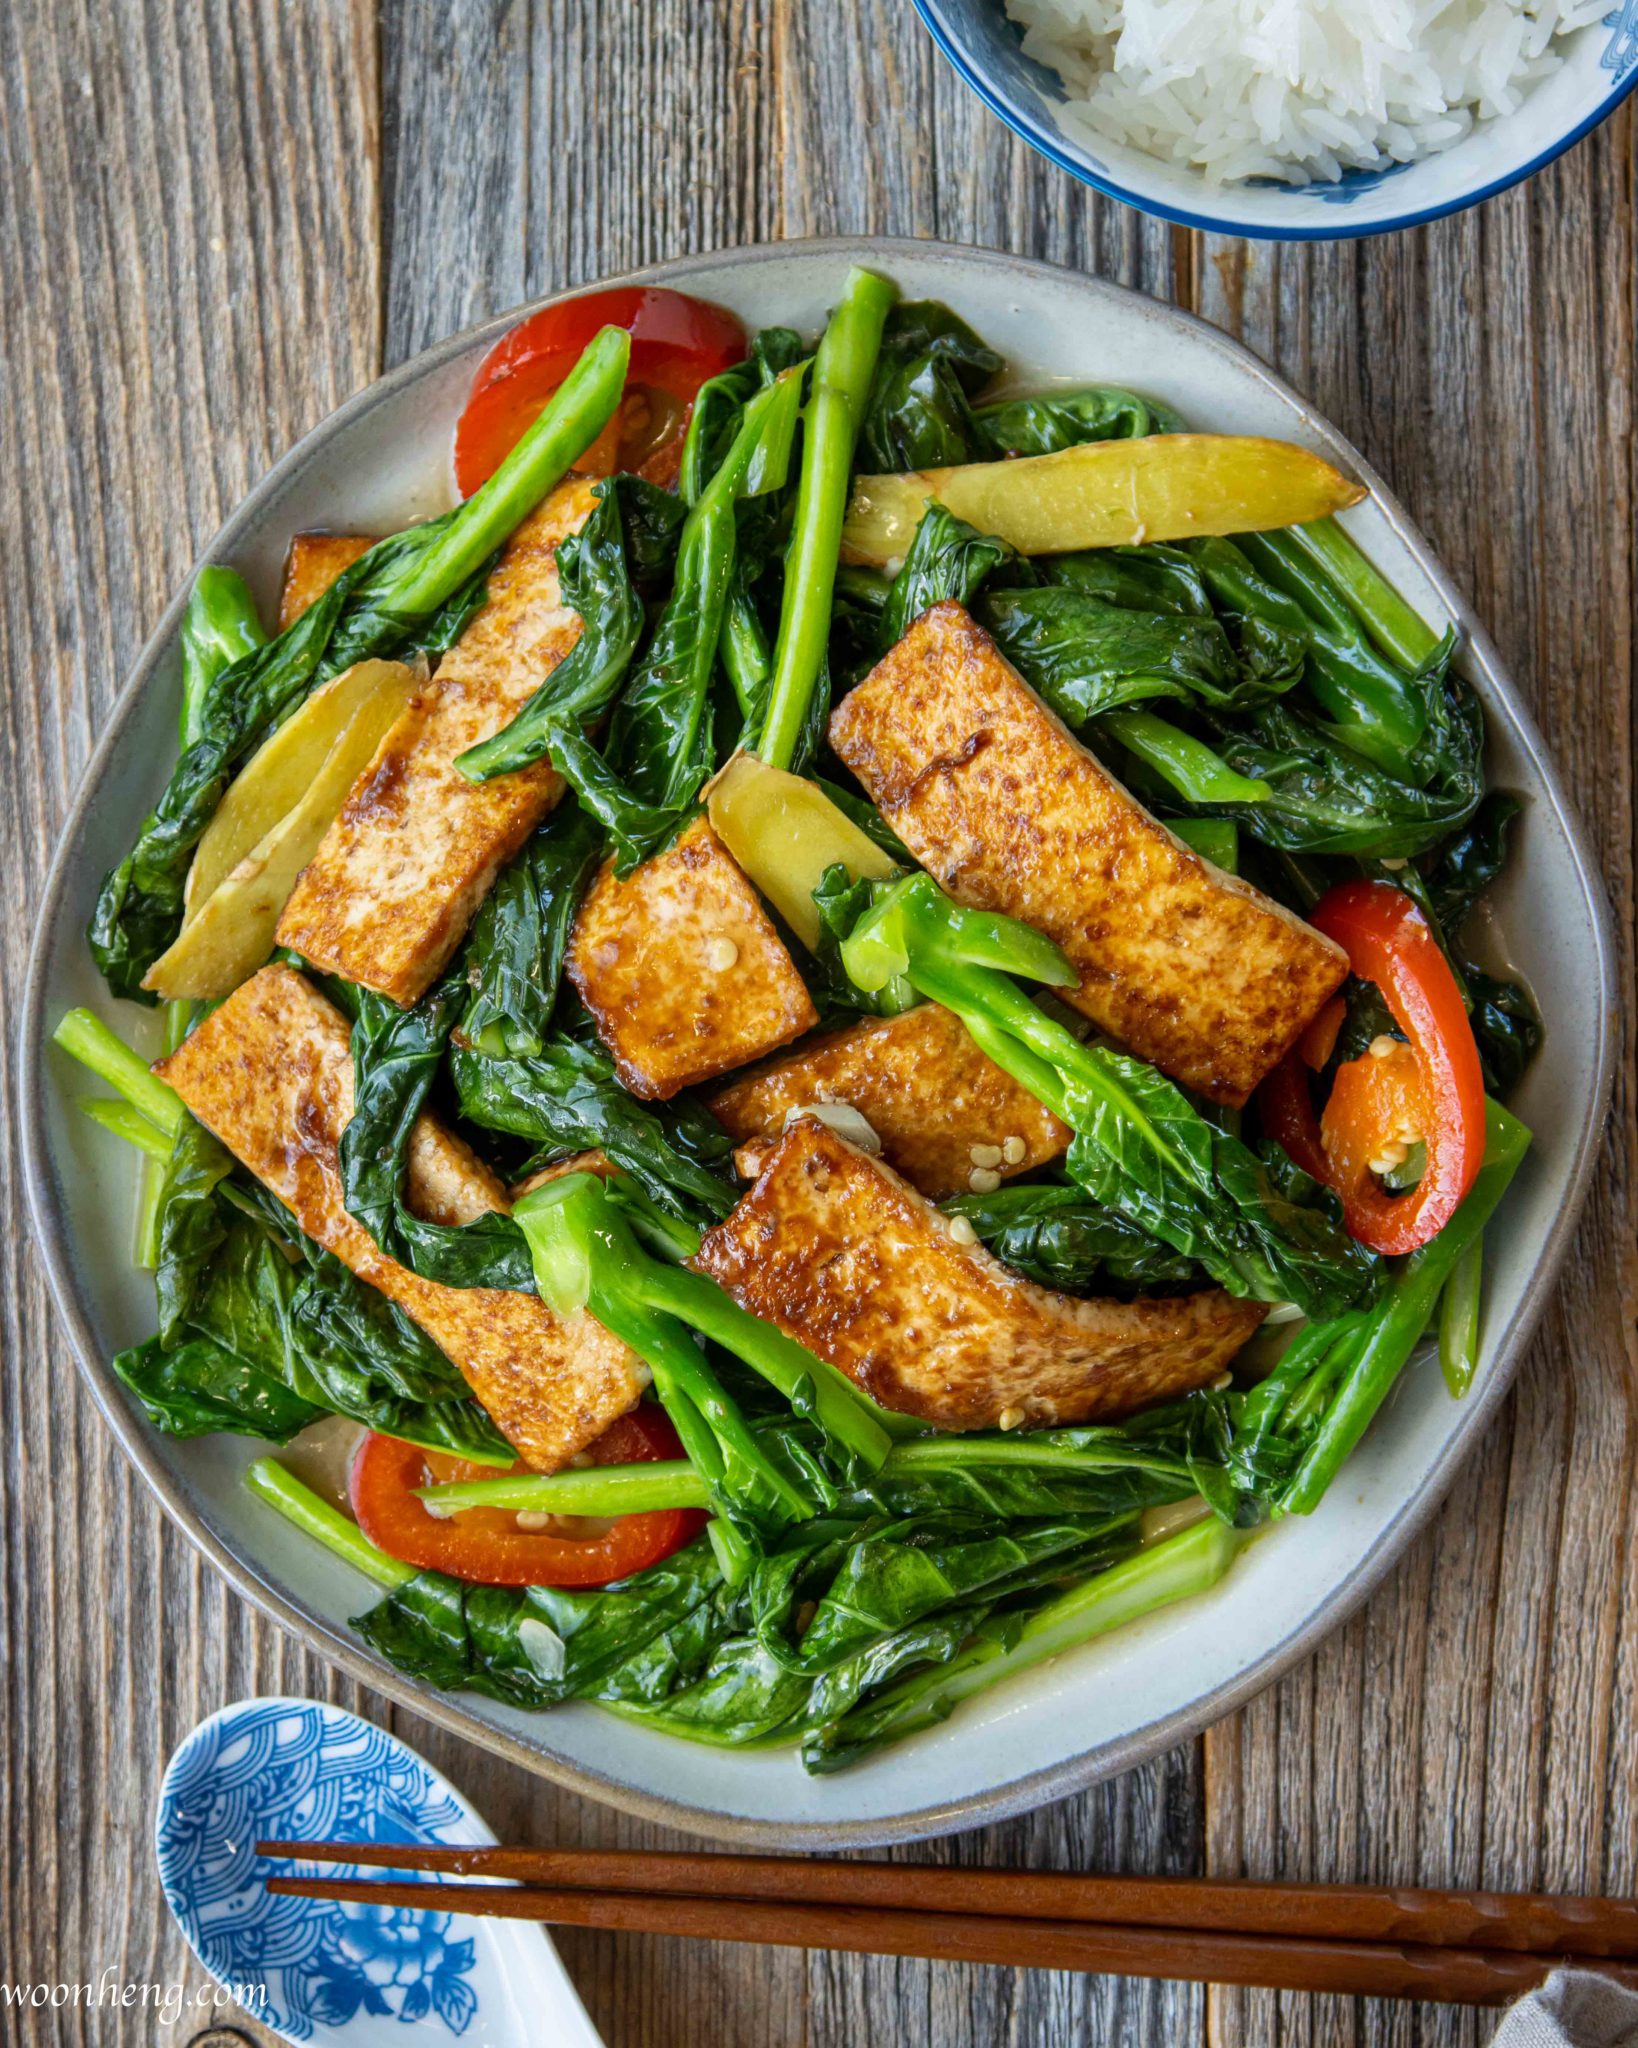 Easy Gai Lan (Chinese broccoli) with Tofu Stir-fry - WoonHeng